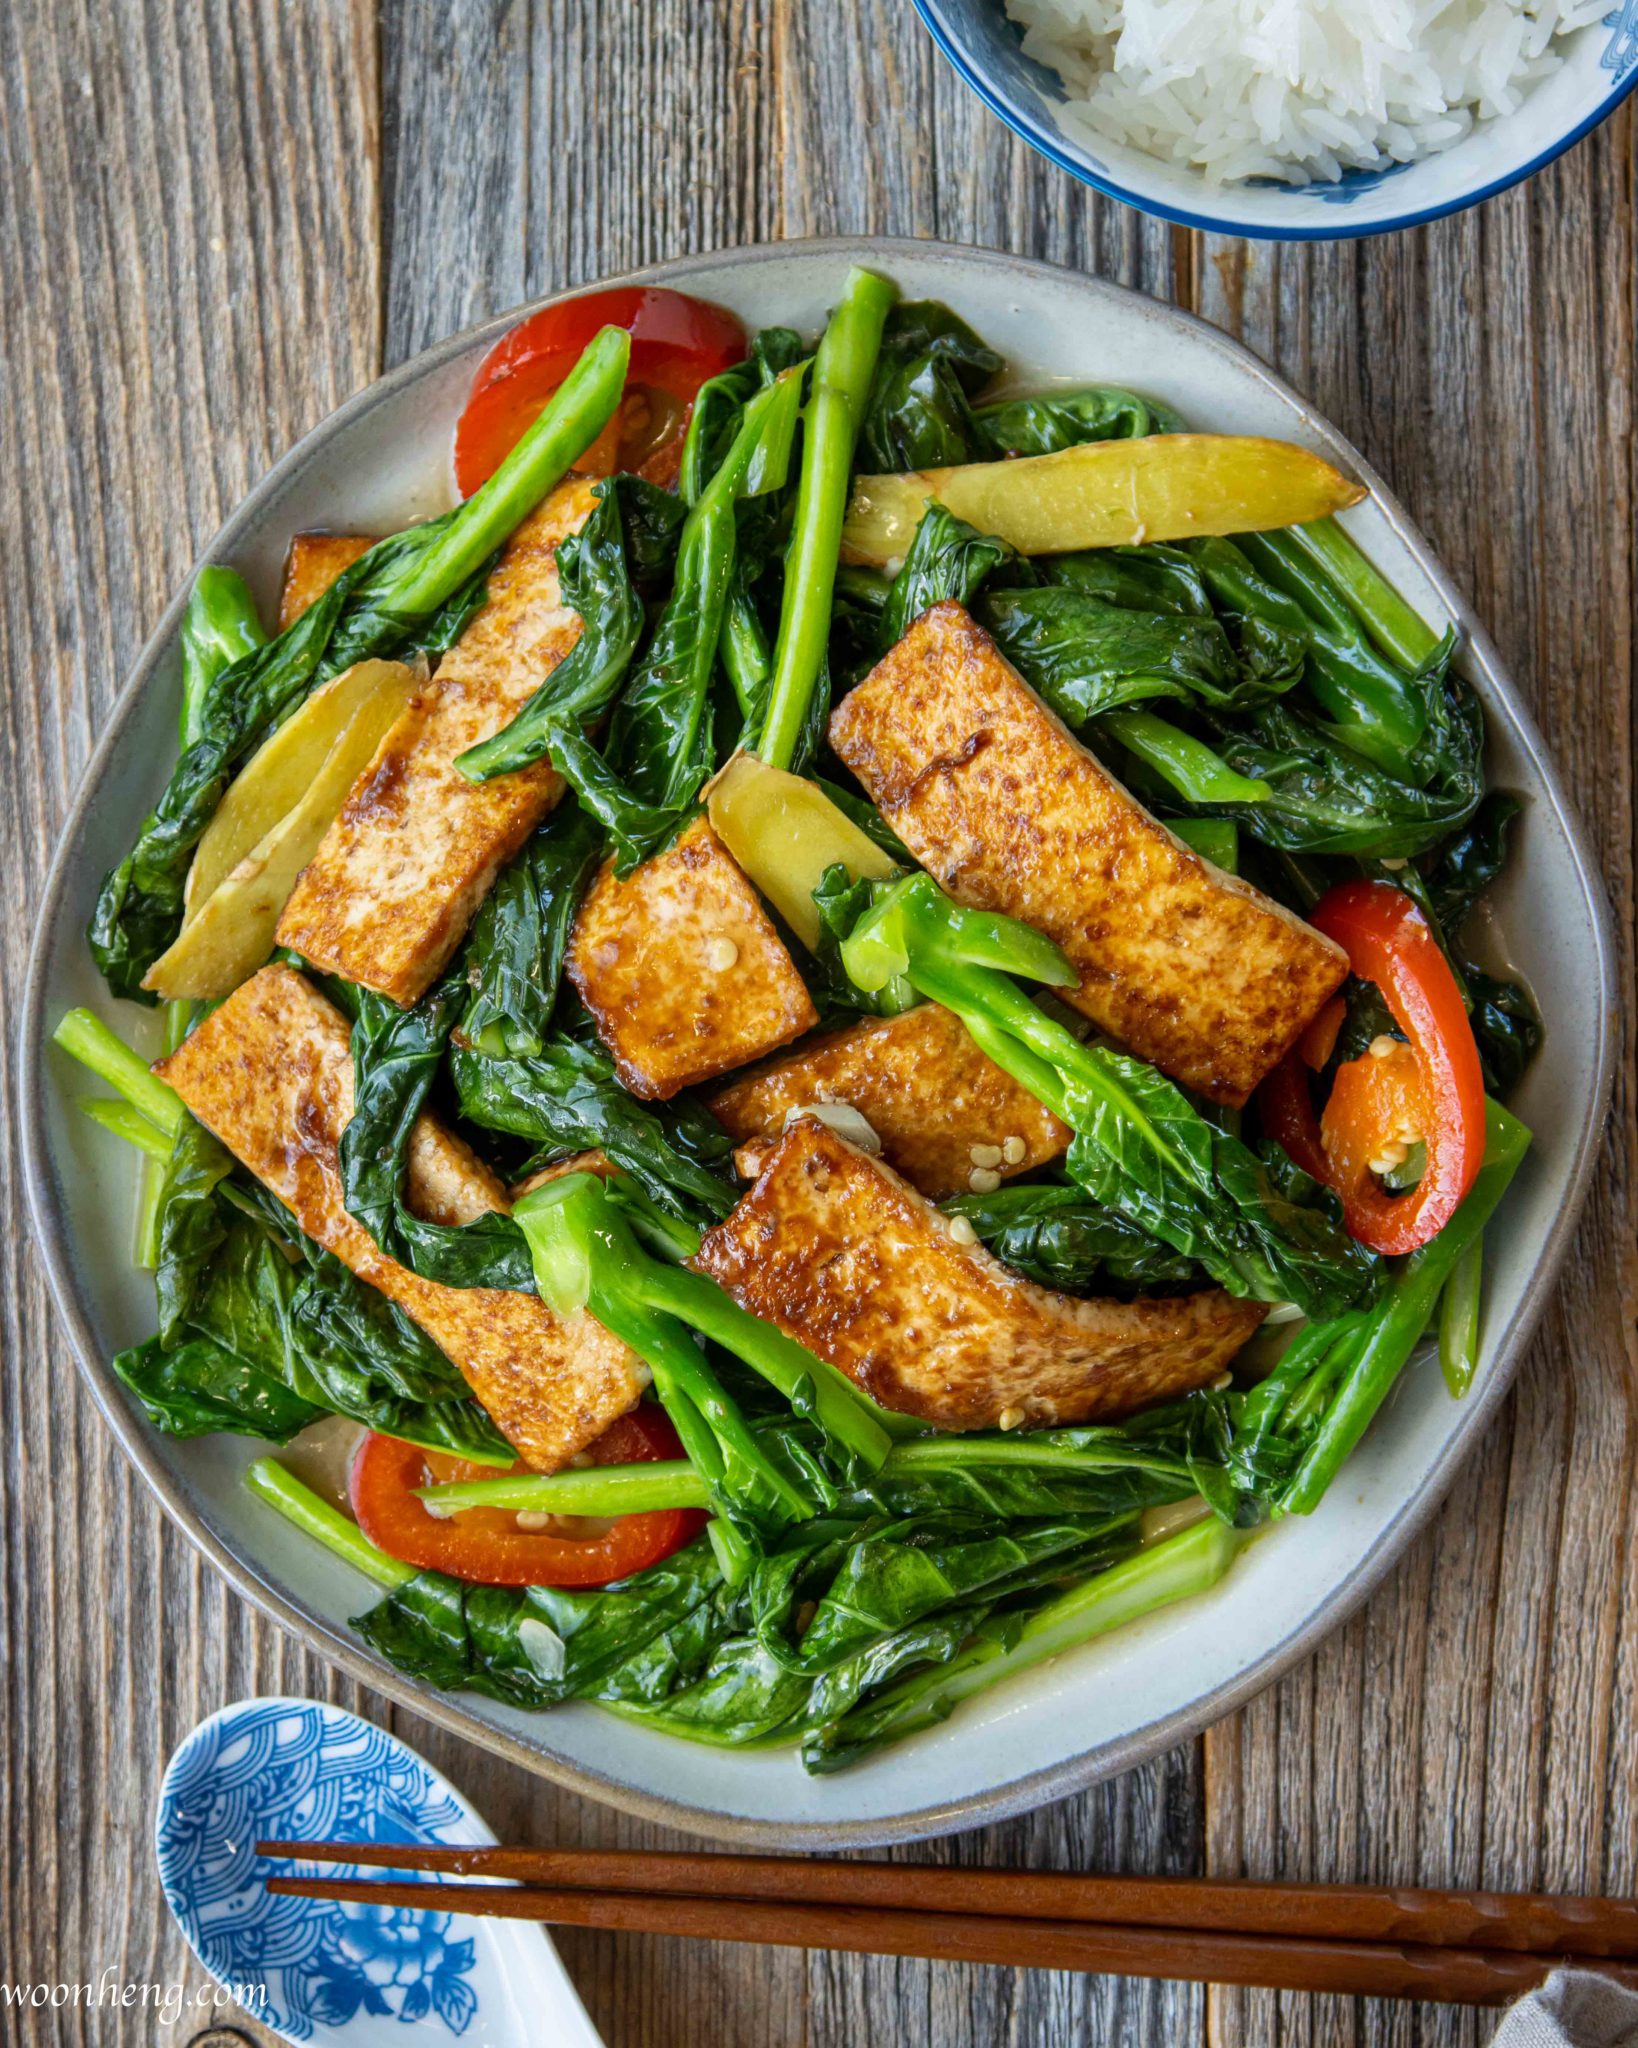 Easy Gai Lan (Chinese broccoli) with Tofu Stir-fry - WoonHeng